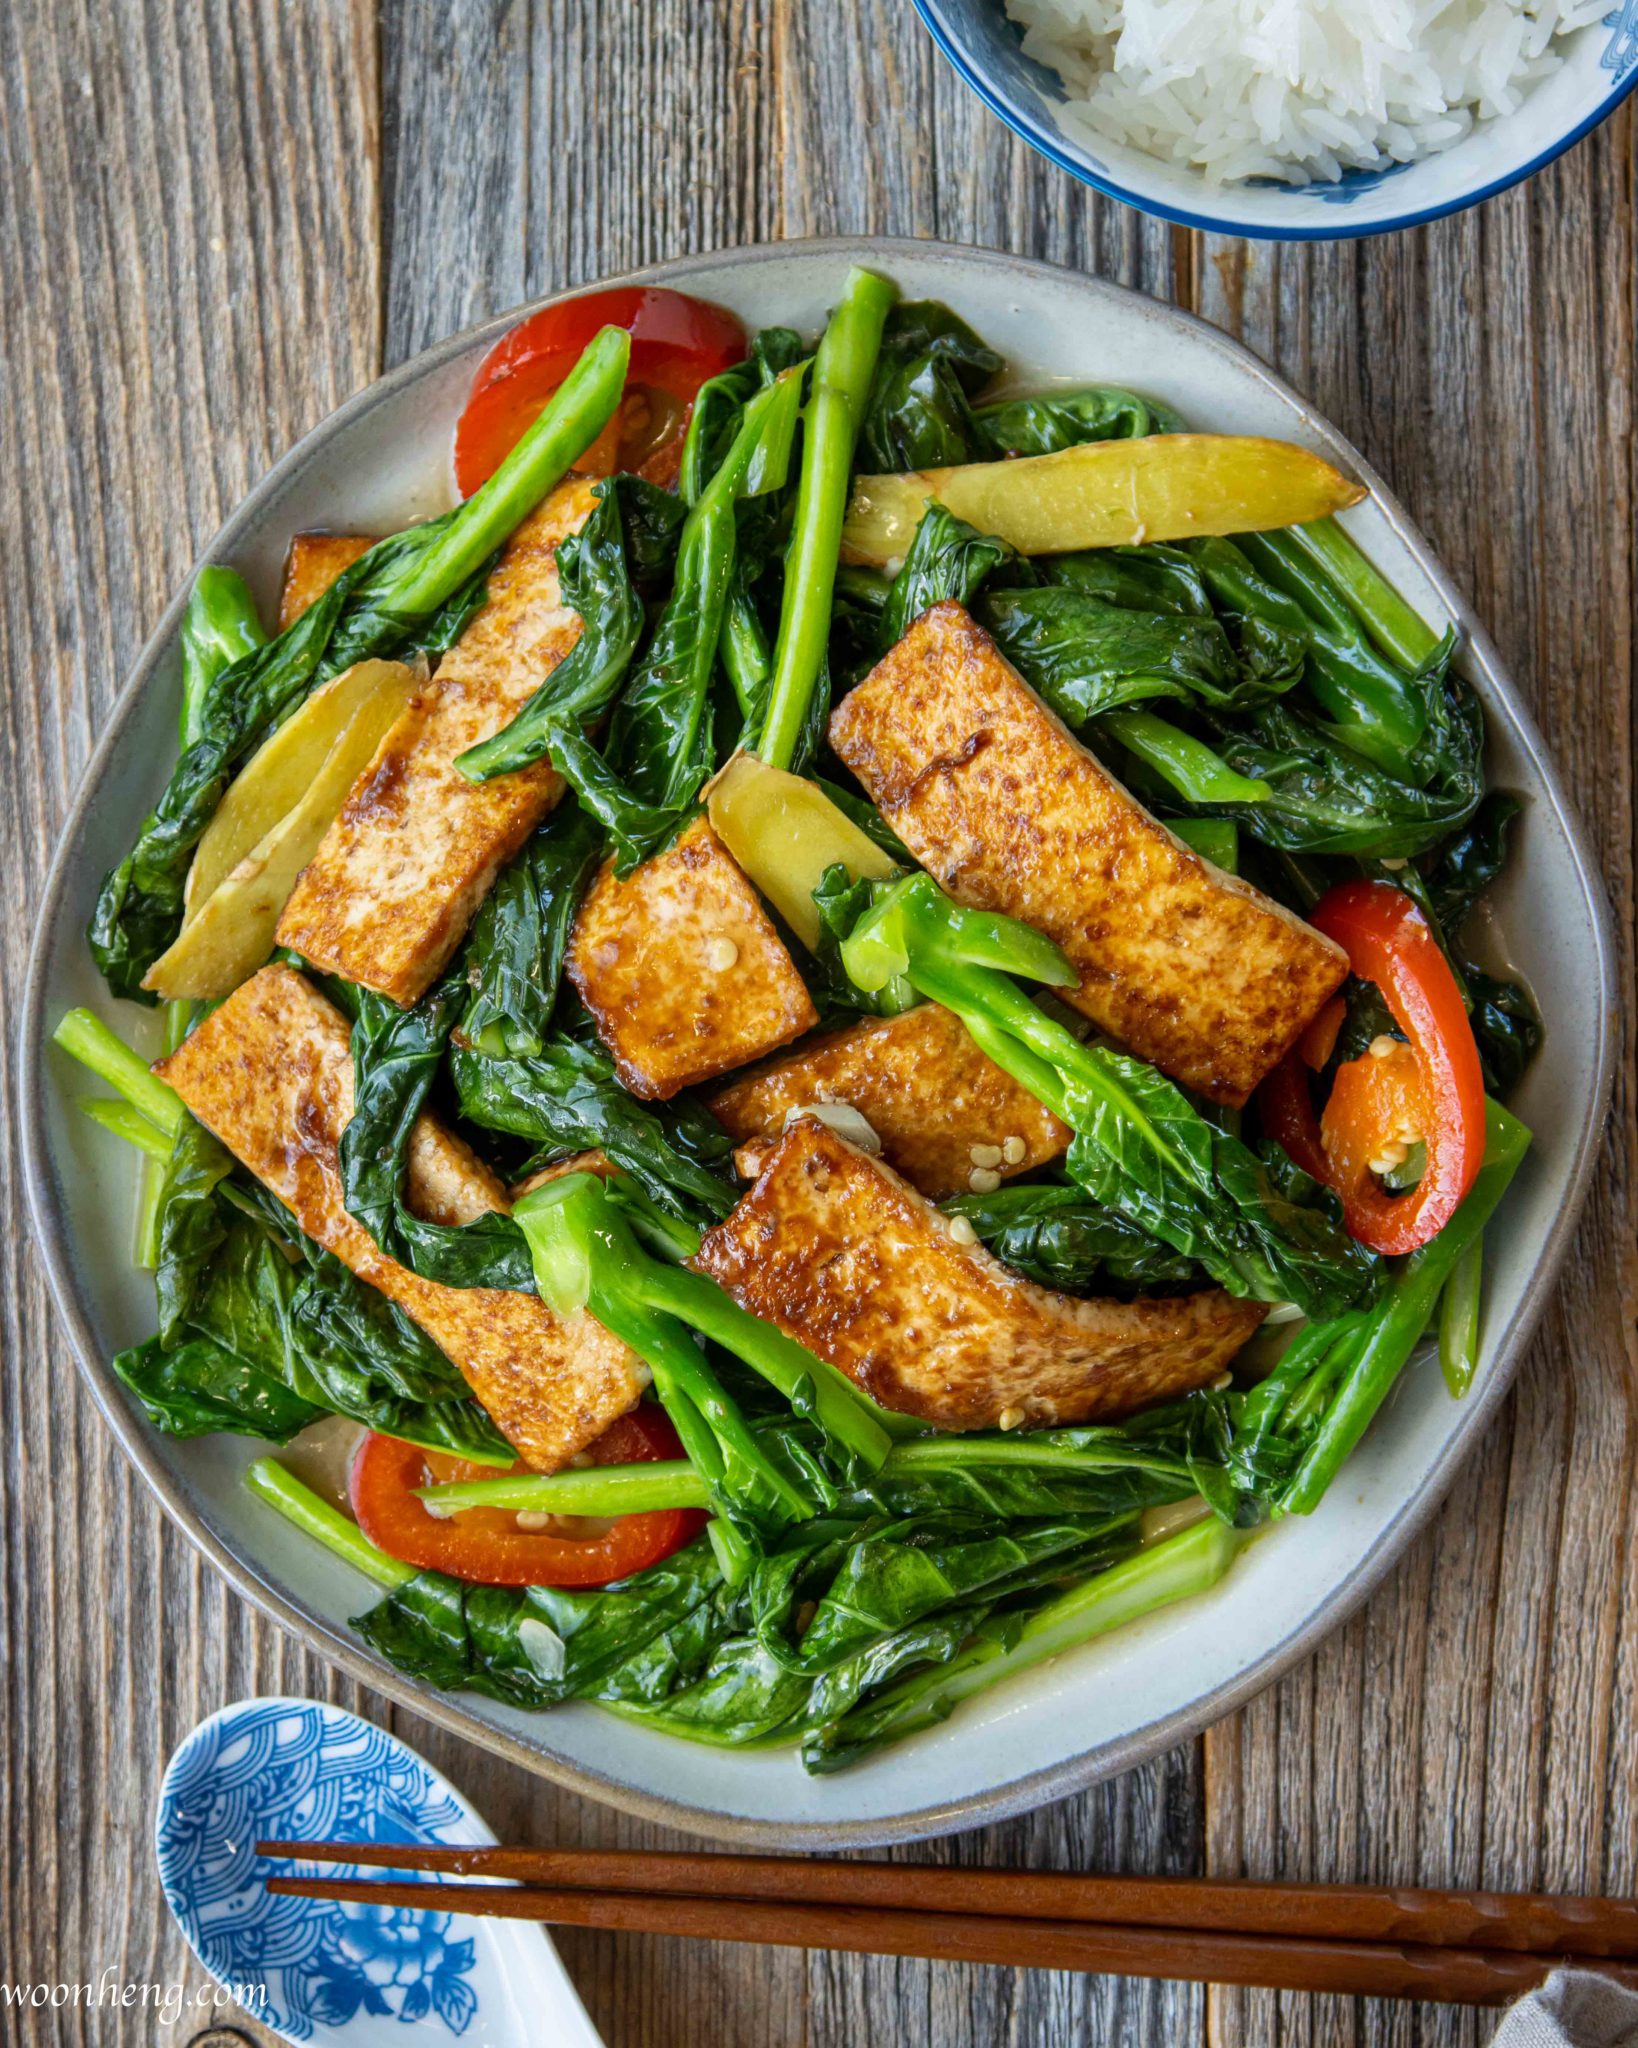 Easy Gai Lan (Chinese broccoli) with Tofu Stir-fry - WoonHeng